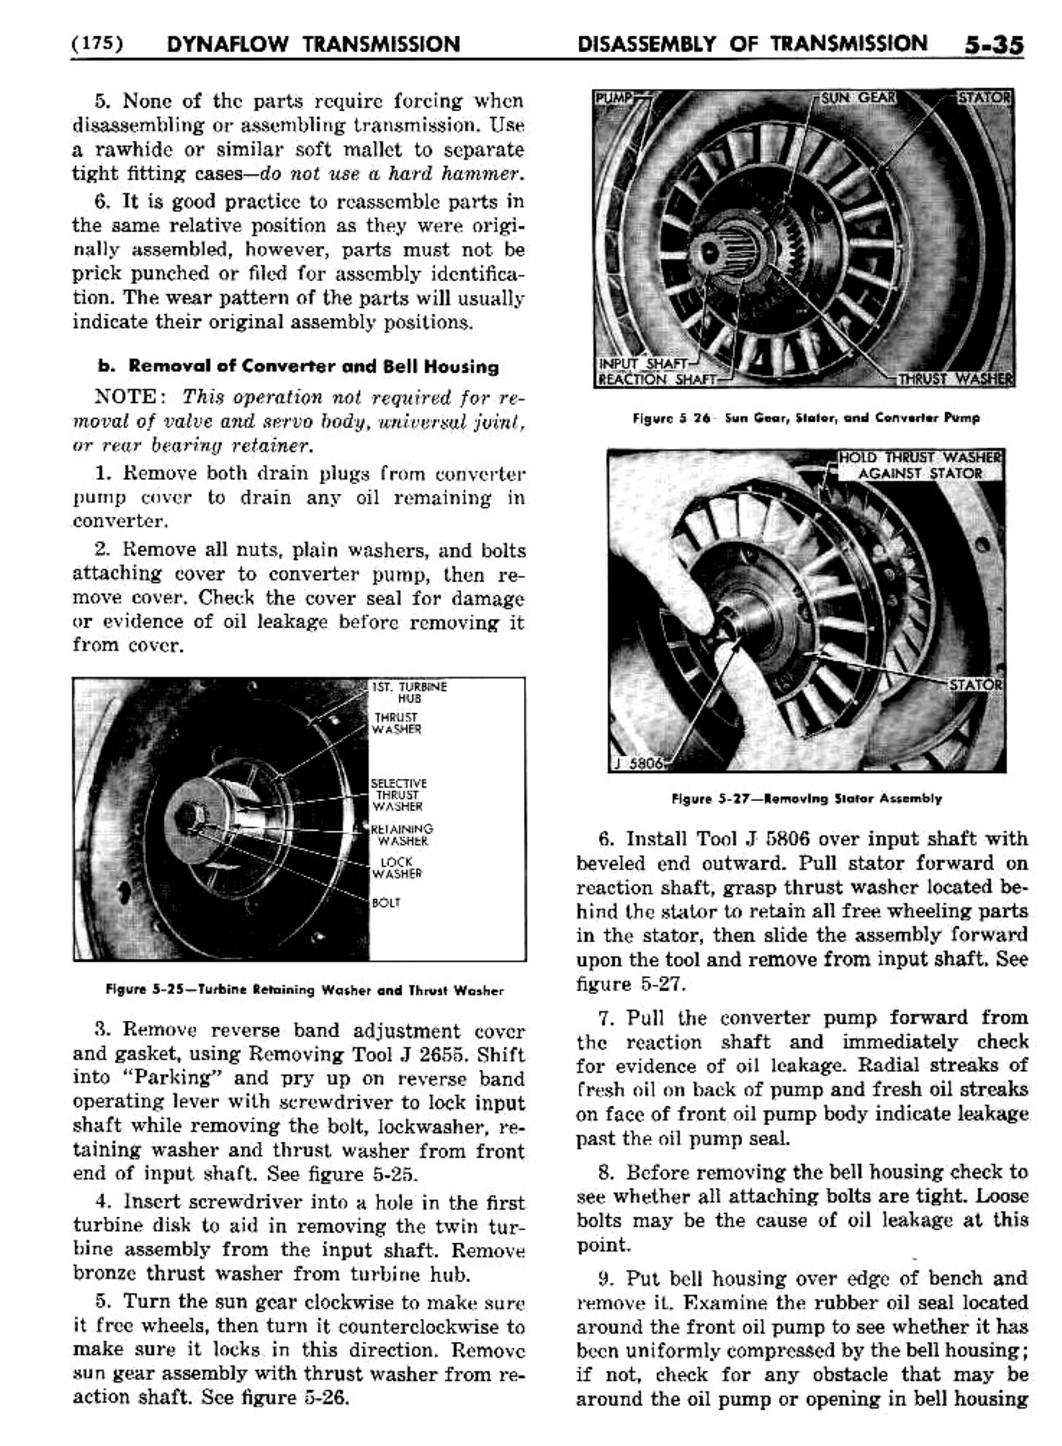 n_06 1955 Buick Shop Manual - Dynaflow-035-035.jpg